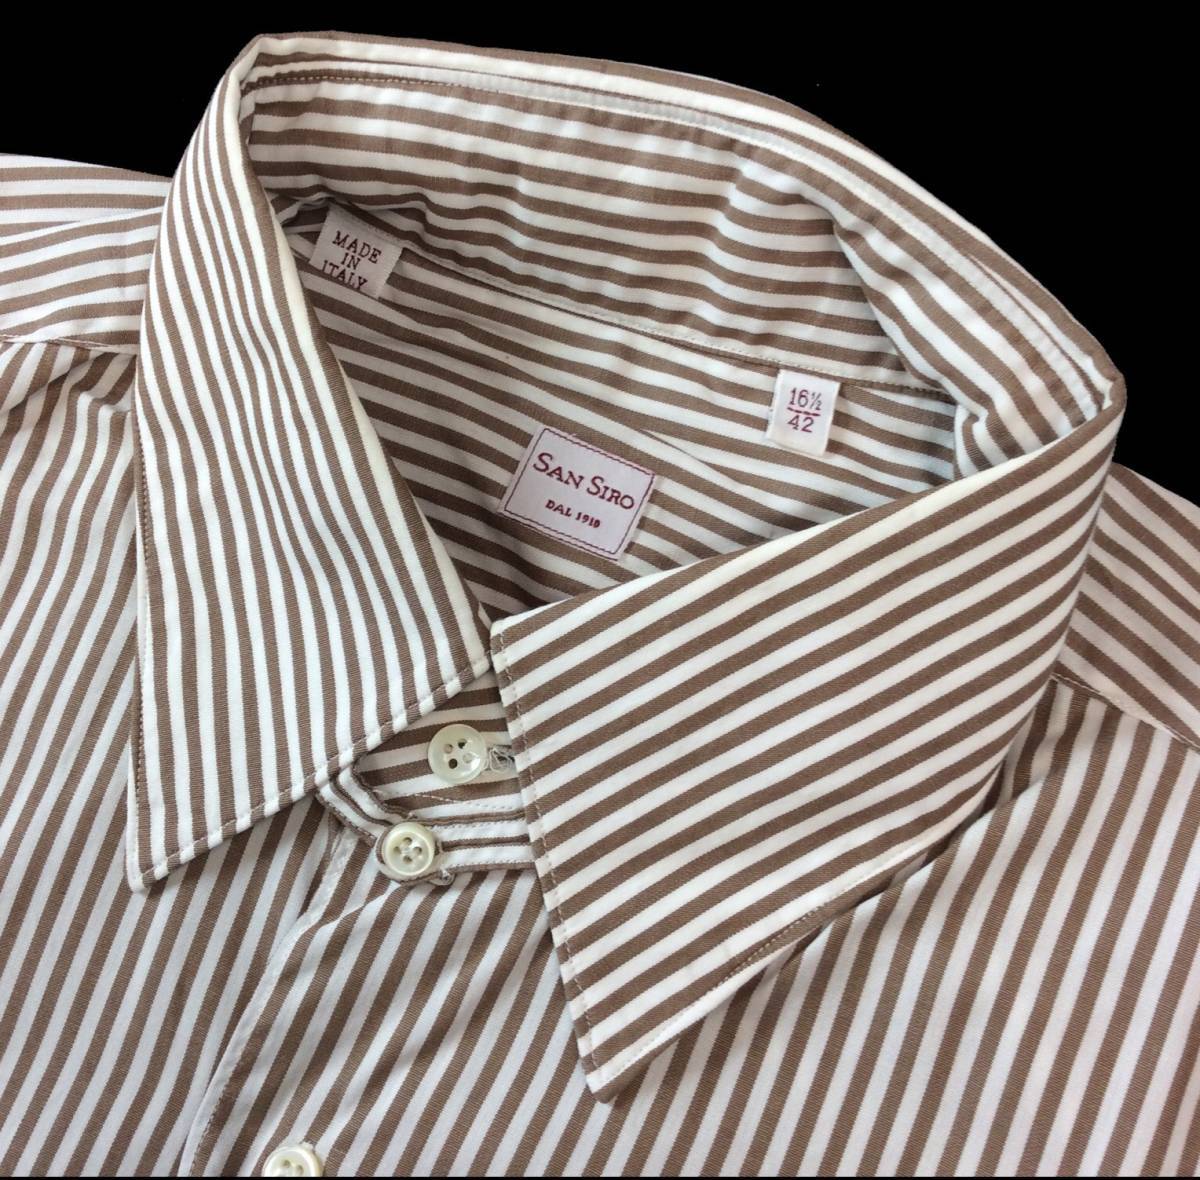 SAN SIRO イタリア製 ストライプ ドレスシャツ ブラウン×ホワイト メンズ 161/2-42 送料250円_画像3